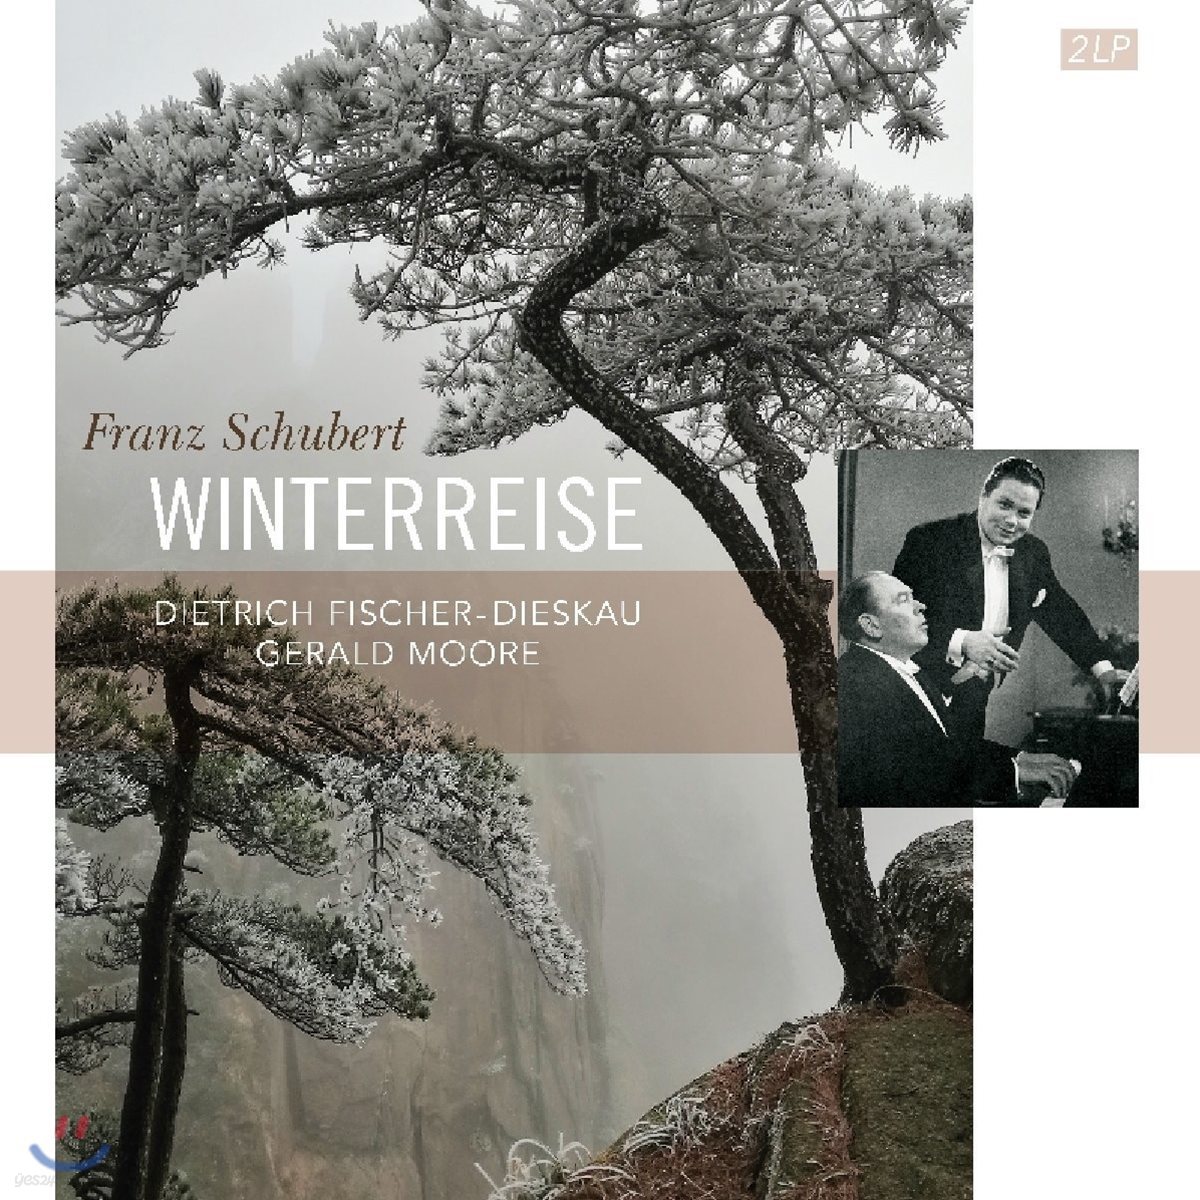 Dietrich Fischer-Dieskau 슈베르트: 가곡 &#39;겨울 나그네&#39; - 디트리히 피셔-디스카우, 제럴드 무어 (Shubert: Lieder &#39;Winterreise&#39;) [2LP]